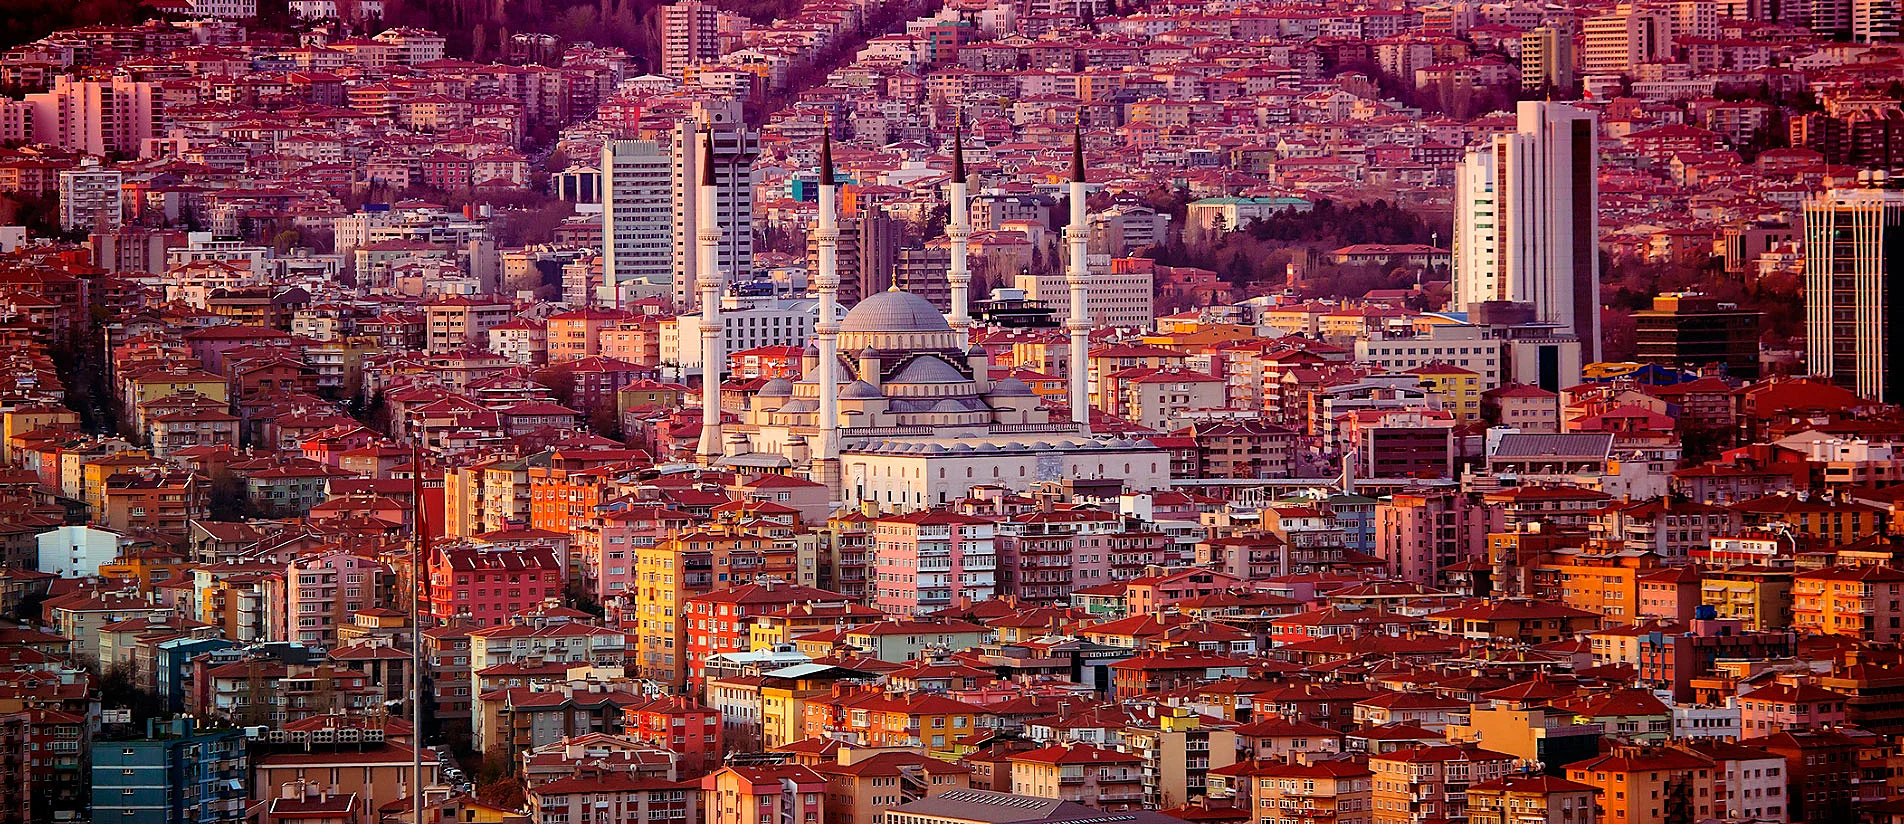 خرید قسطی خانه در ترکیه